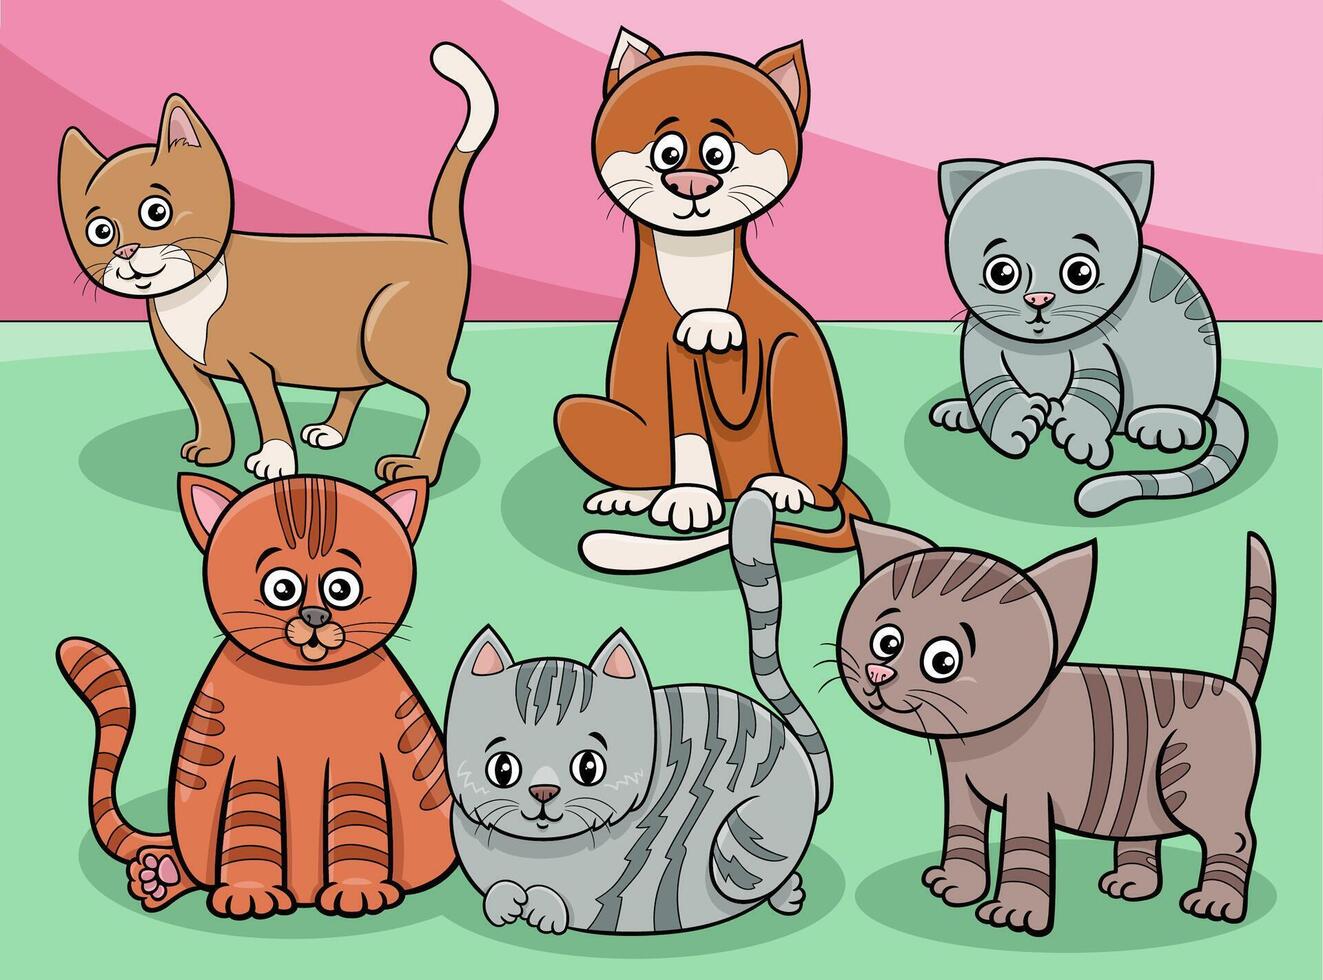 grupo de personajes de animales de gatos y gatitos de dibujos animados vector